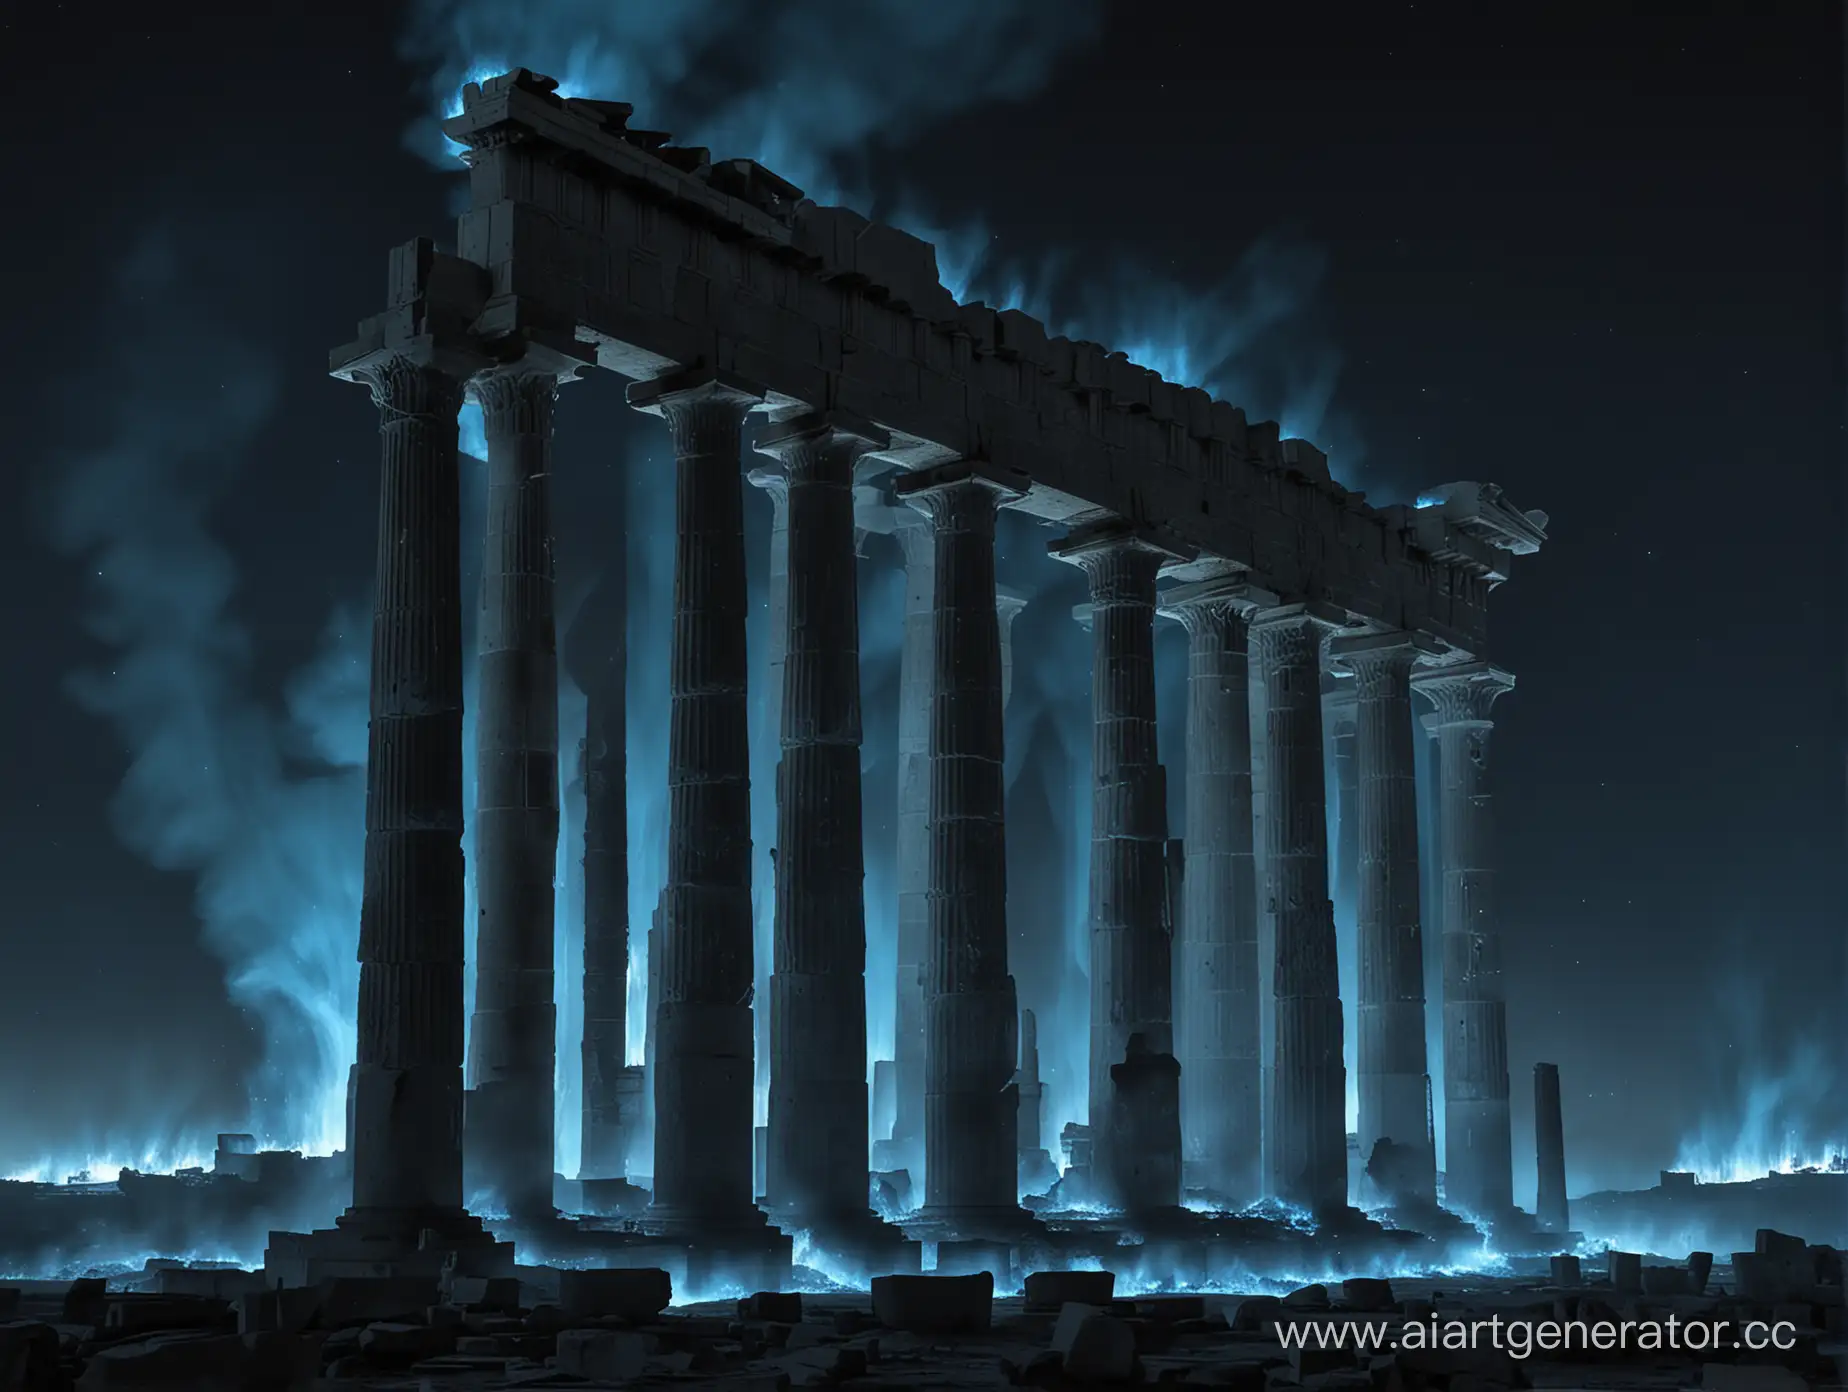 Большая местностьв темноте и в анфас, похожая на Парфенон, с большими разрушенными столбами, охвачеными синим огнем